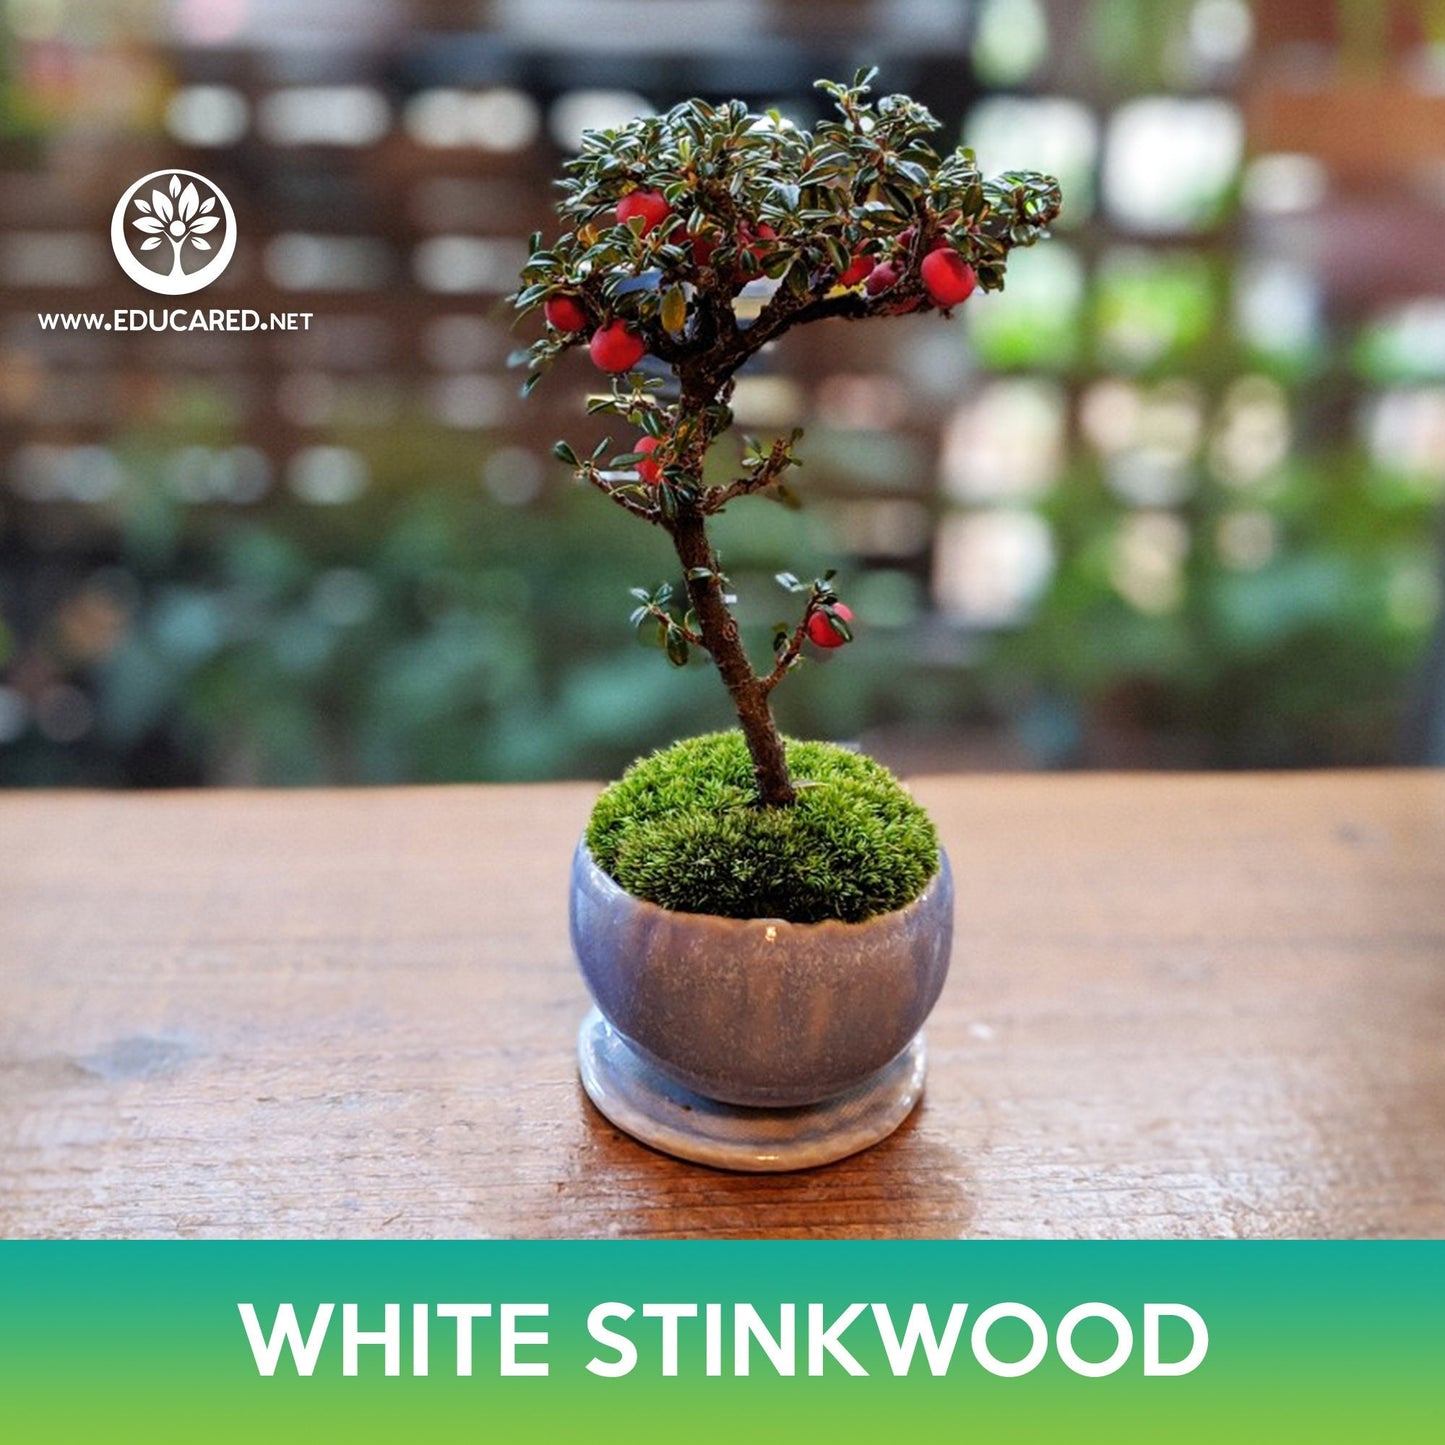 White Stinkwood